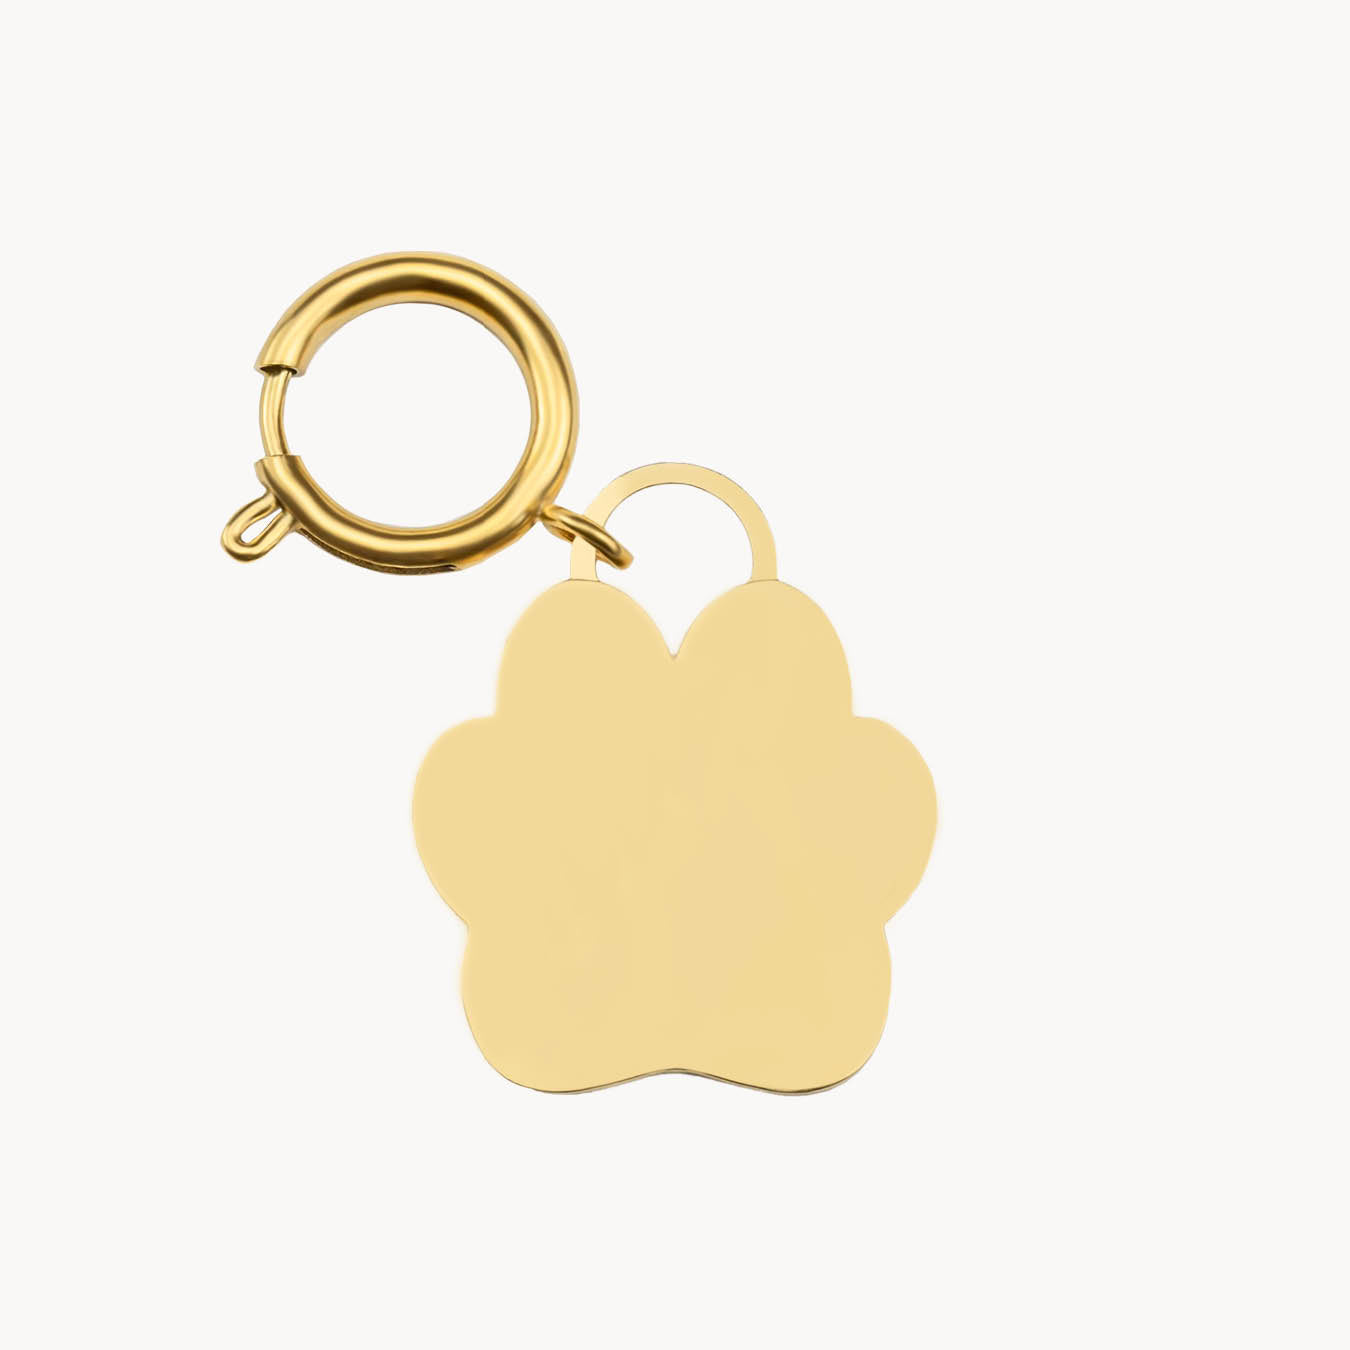 Pet & Friend Engravable Paw Set, Gold